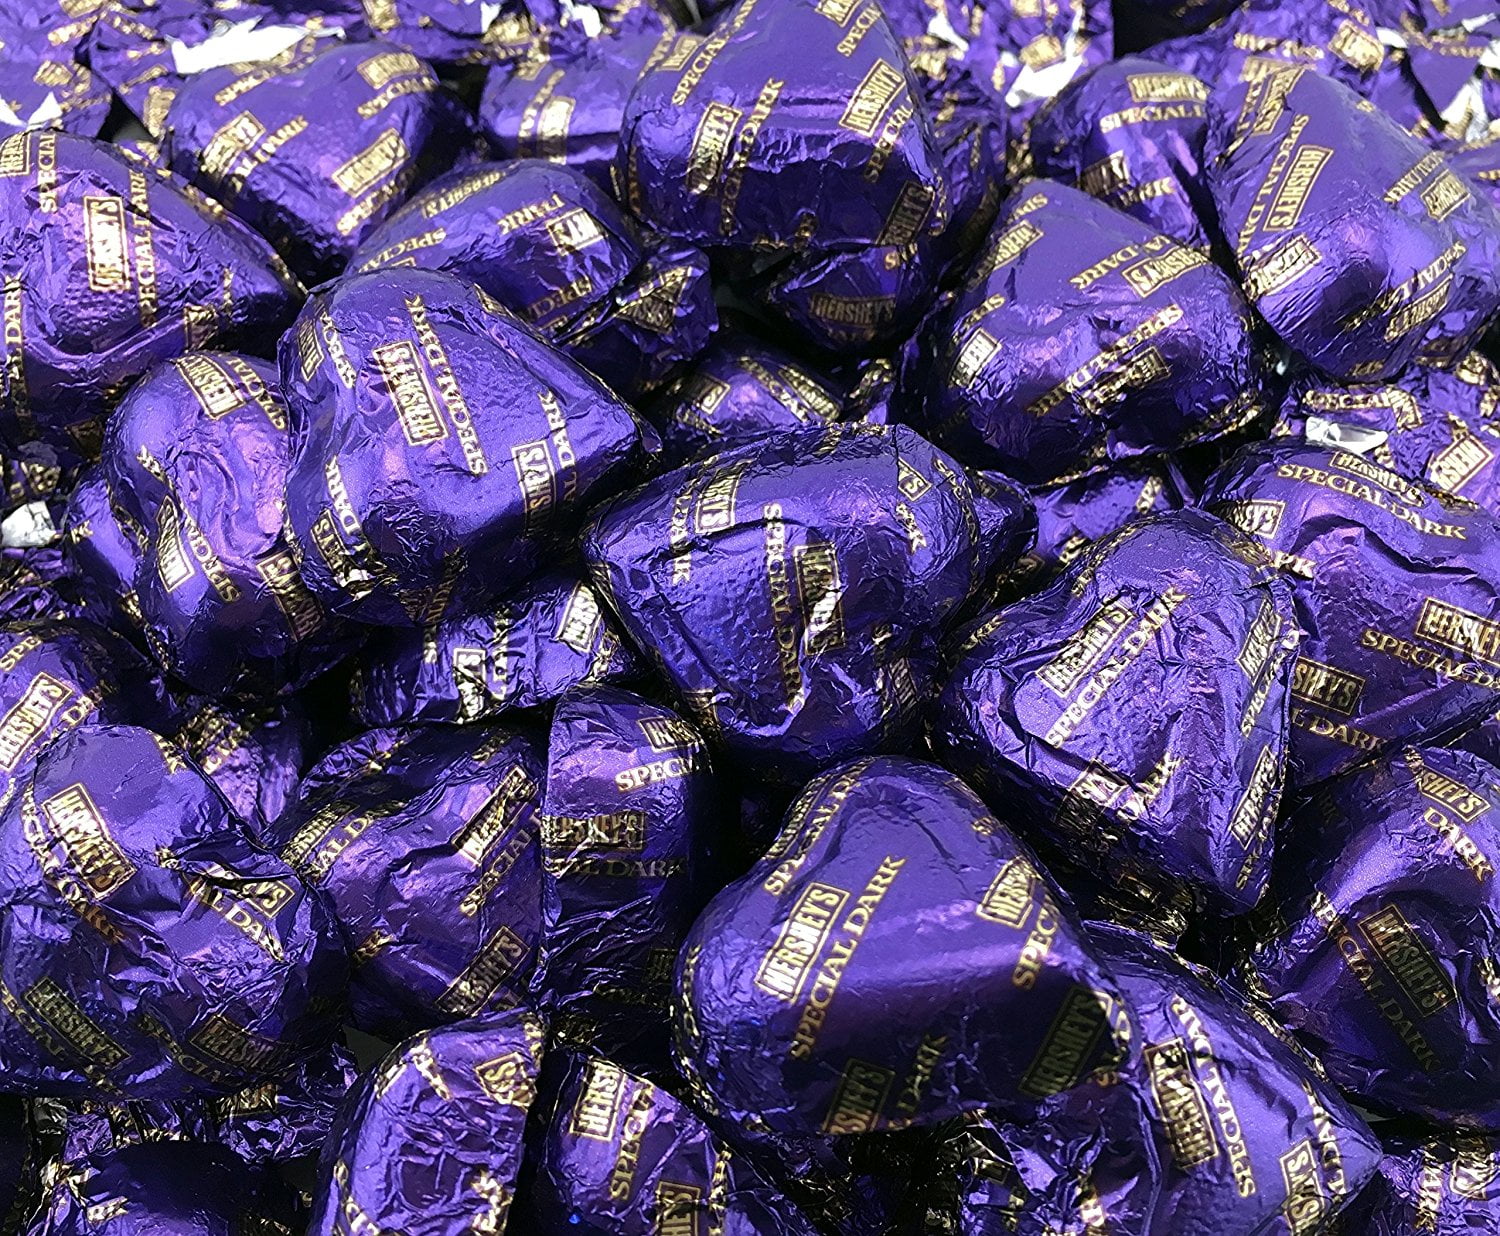 Hershey's Valentine's Hearts Dark Chocolate Candy, Purple, Bulk Pack